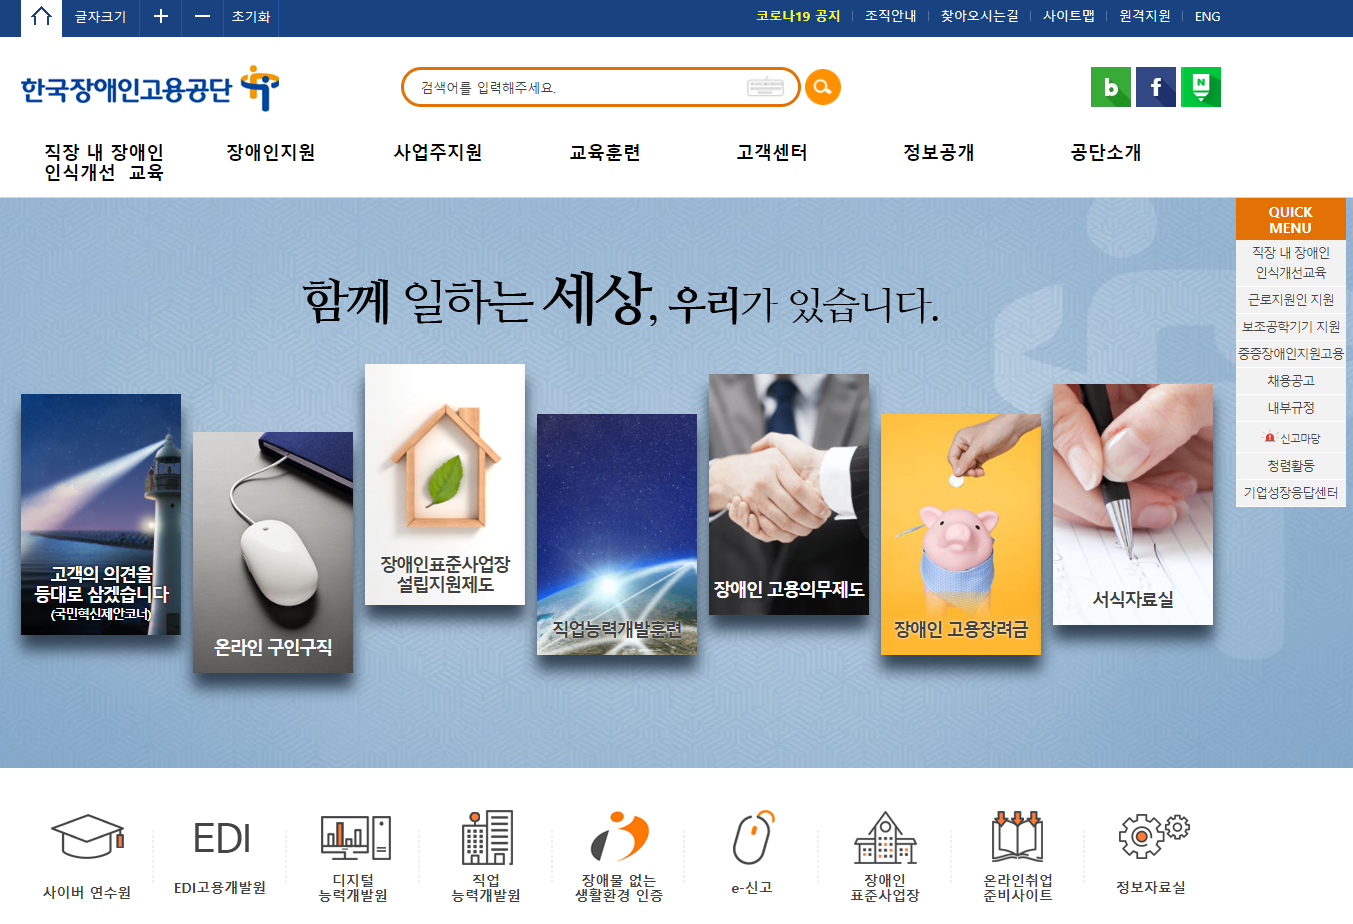 한국장애인고용공단 대표홈페이지 스크릿샷